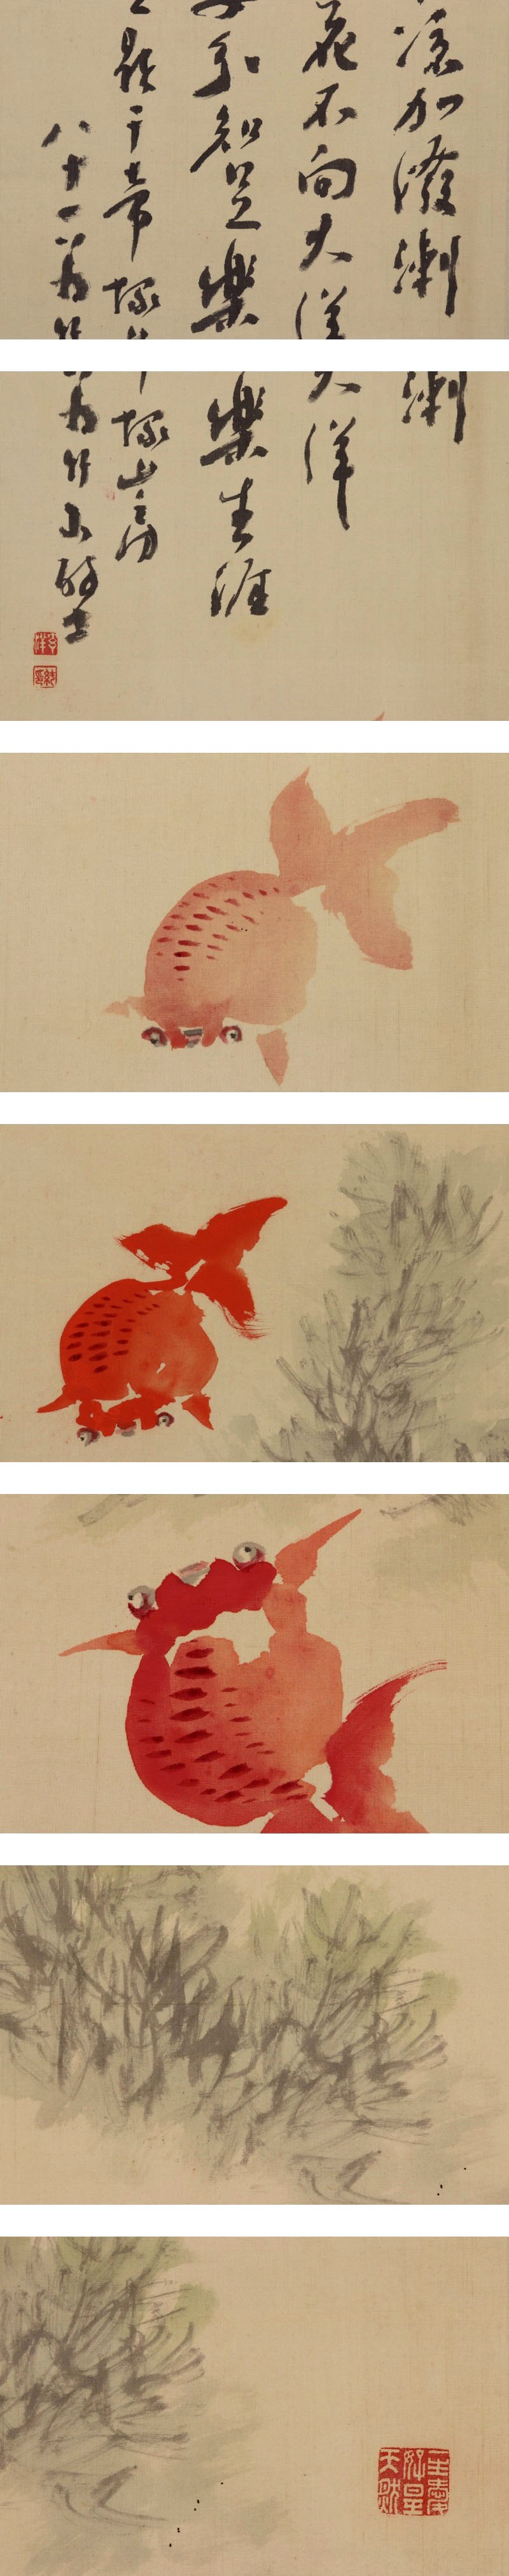 在庫大人気姫島竹外◆絹本◆共箱◆掛軸 v12239 花鳥、鳥獣